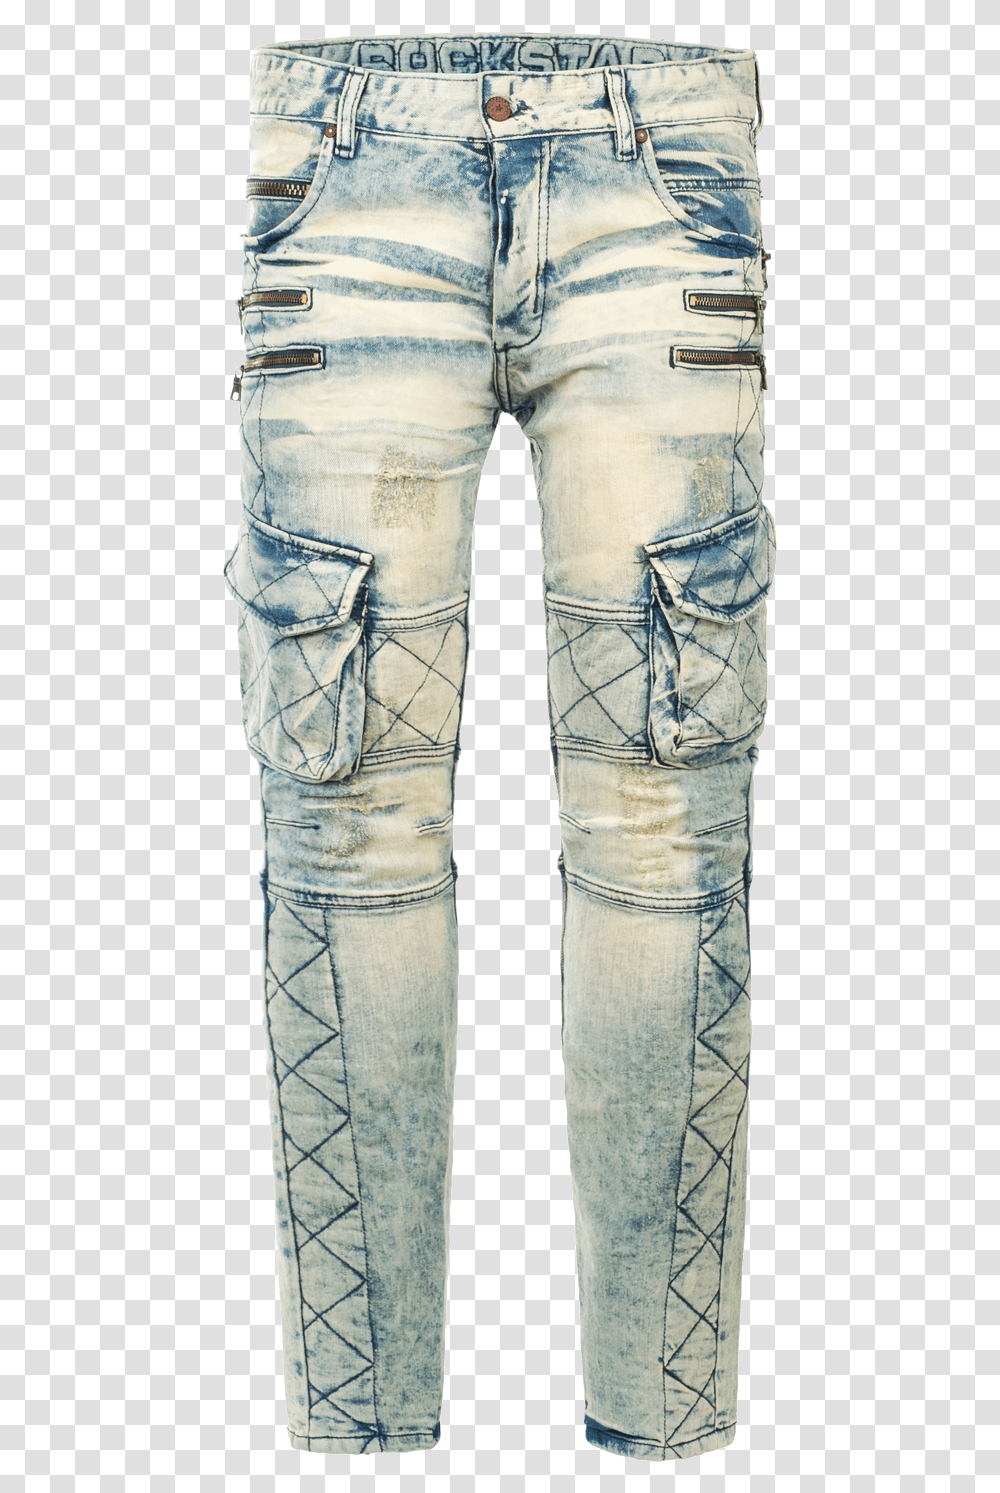 Biker Jeans Image With Background Pocket, Pants, Skin, Footwear Transparent Png